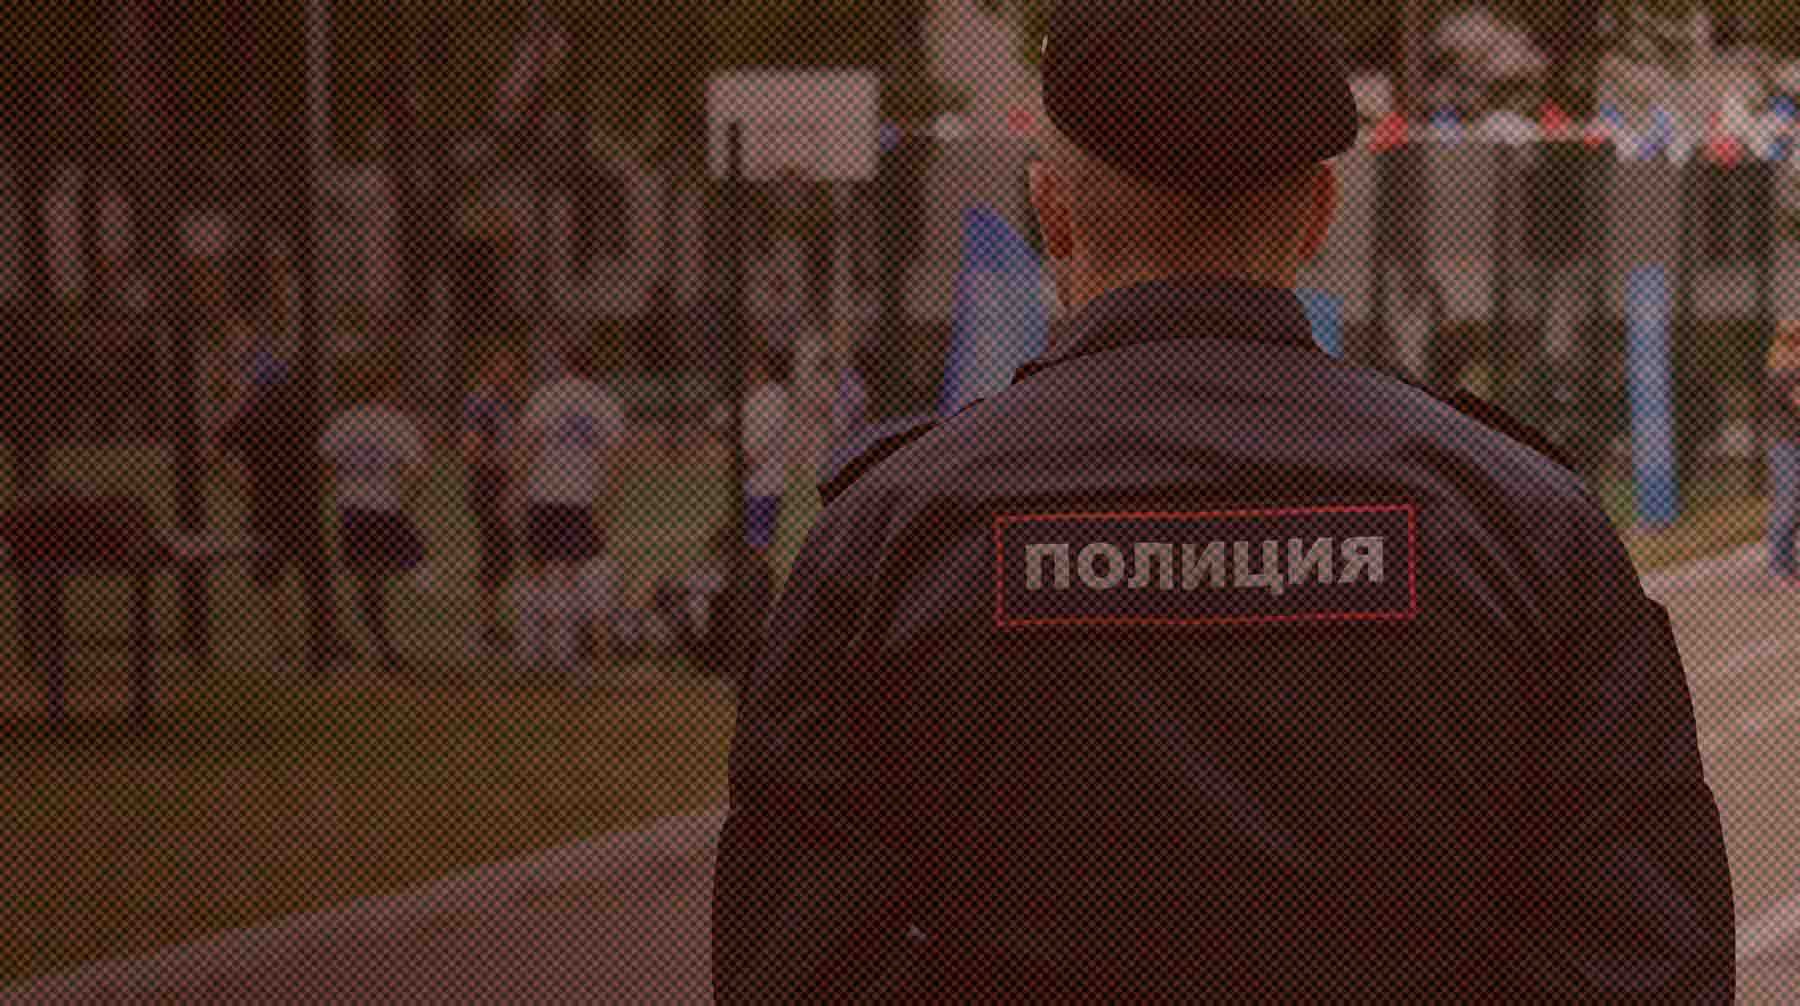 Dailystorm - В Орловской области задержали трансгендерного мужчину по подозрению в финансировании ВСУ